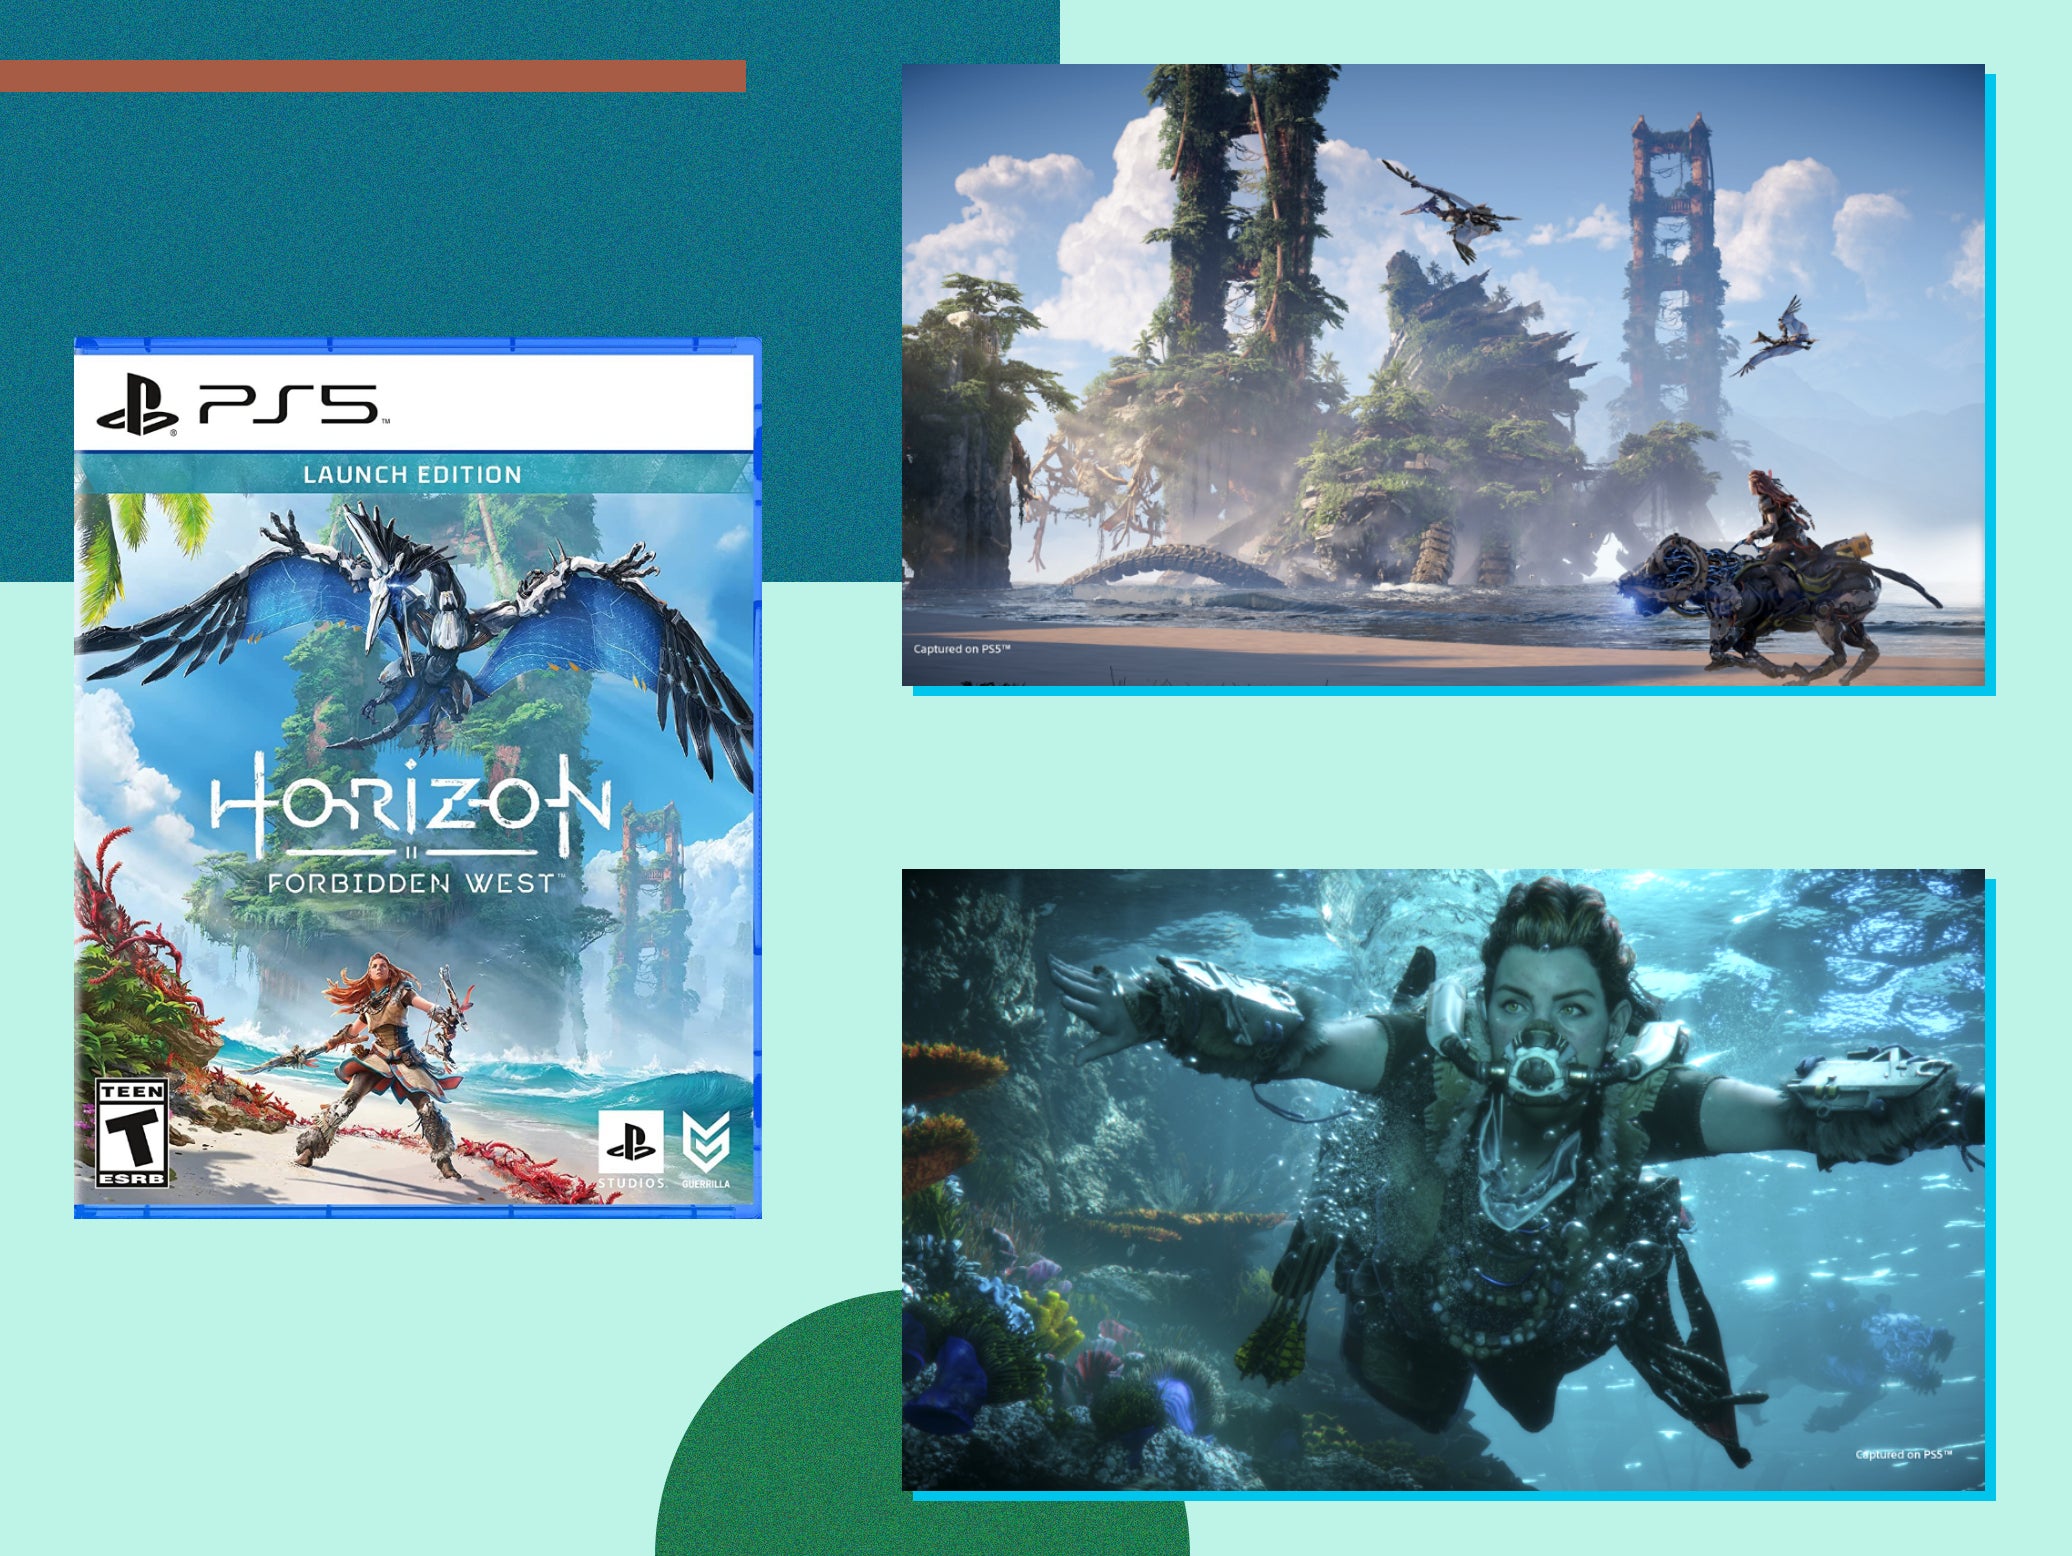 Horizon Zero Dawn  PS5 Gameplay 